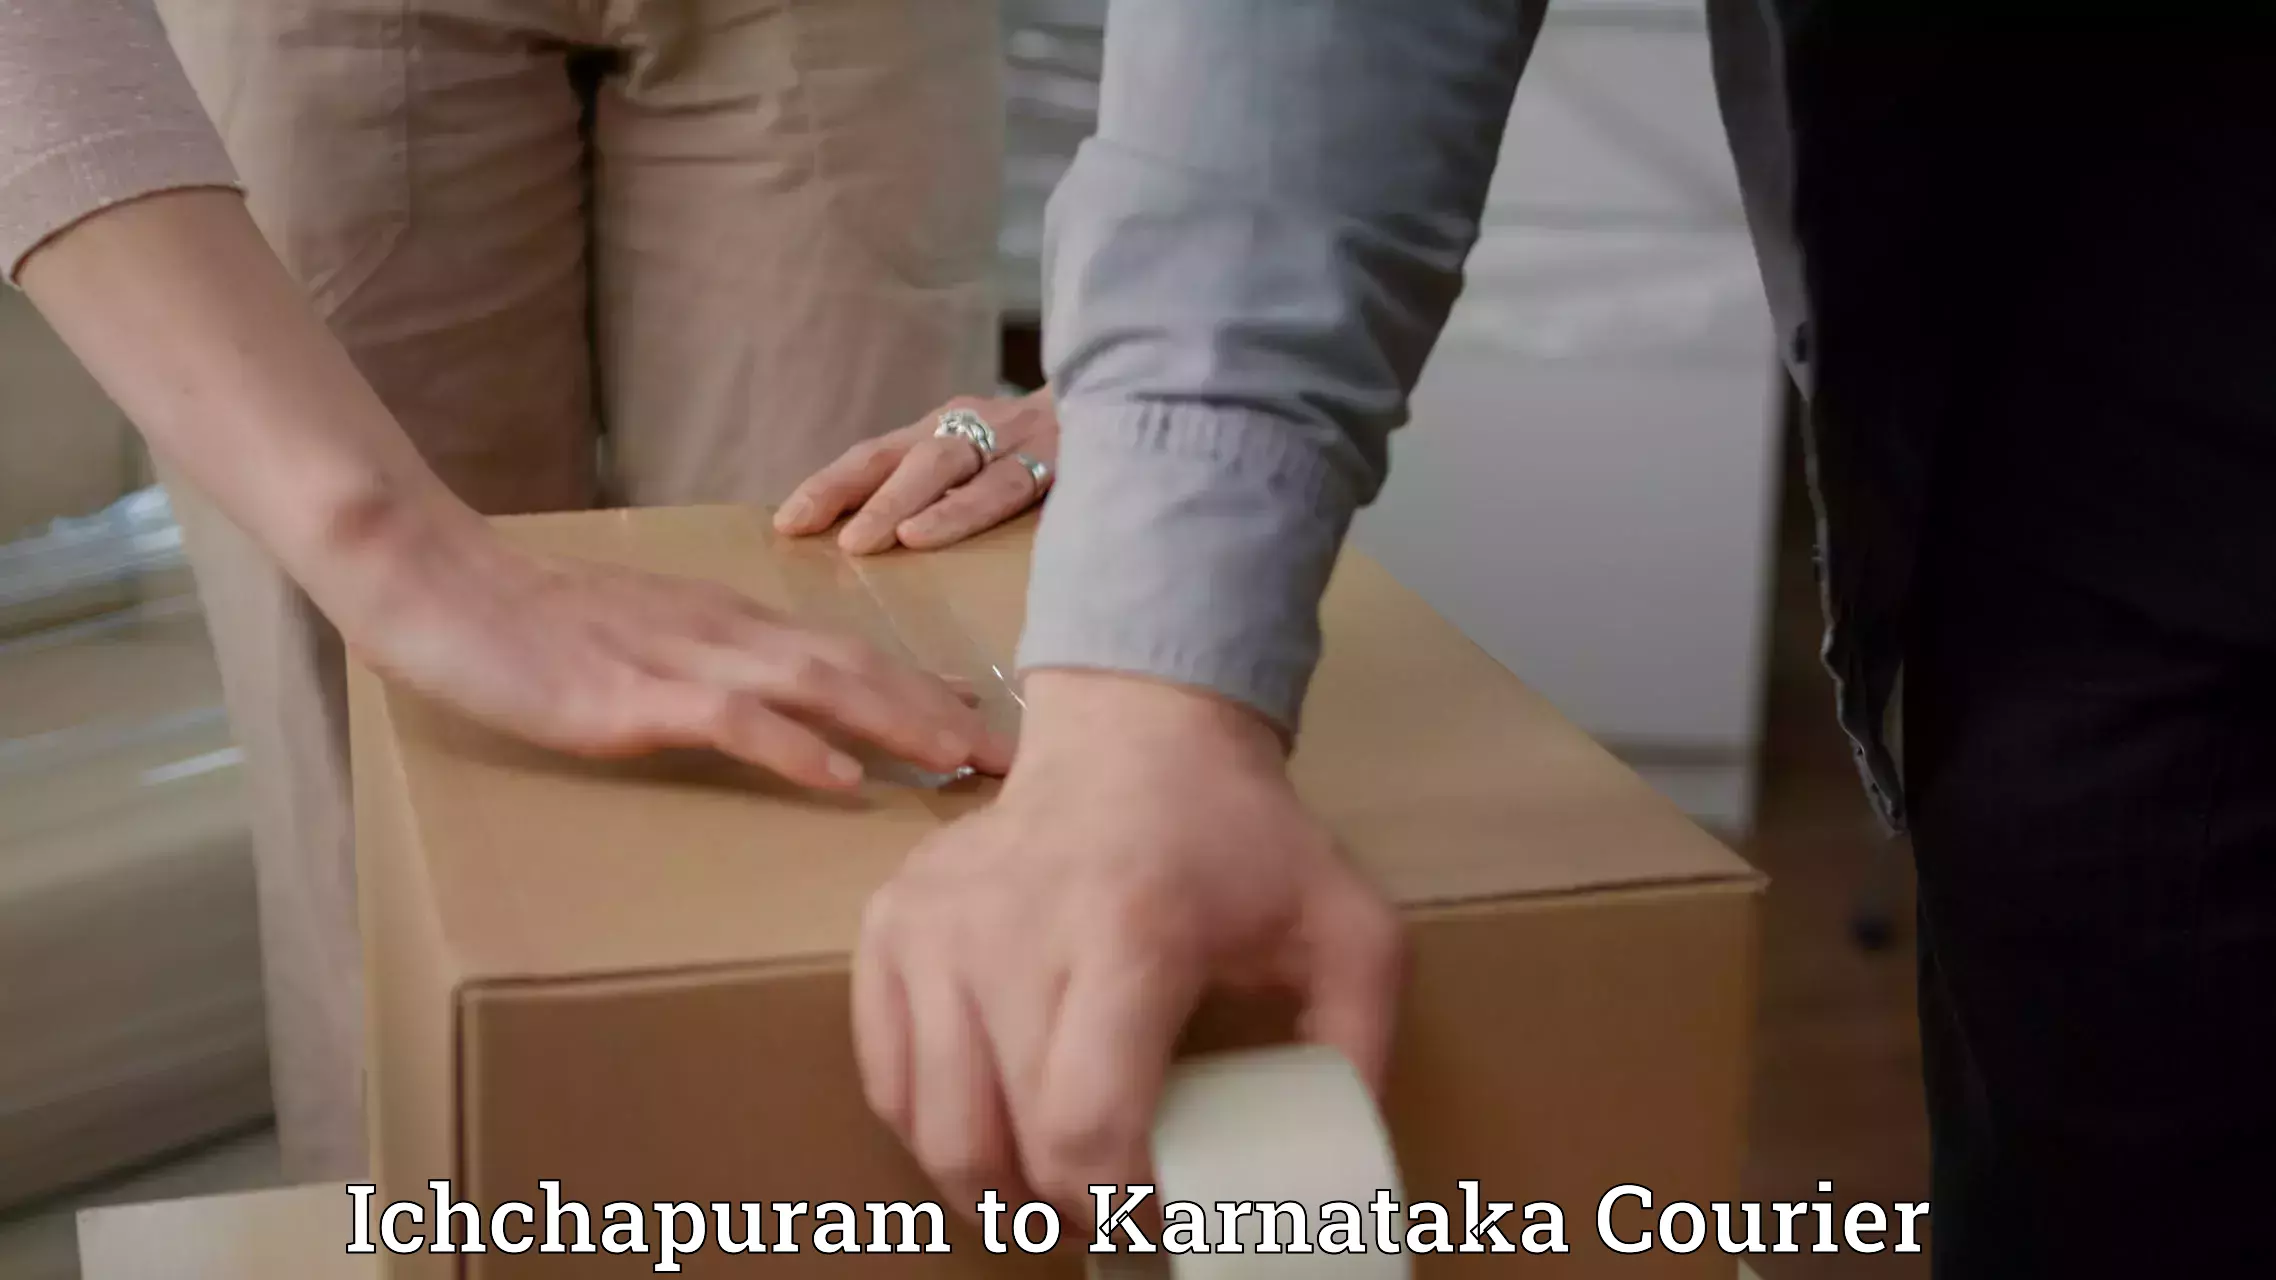 24-hour courier service Ichchapuram to Huliyar